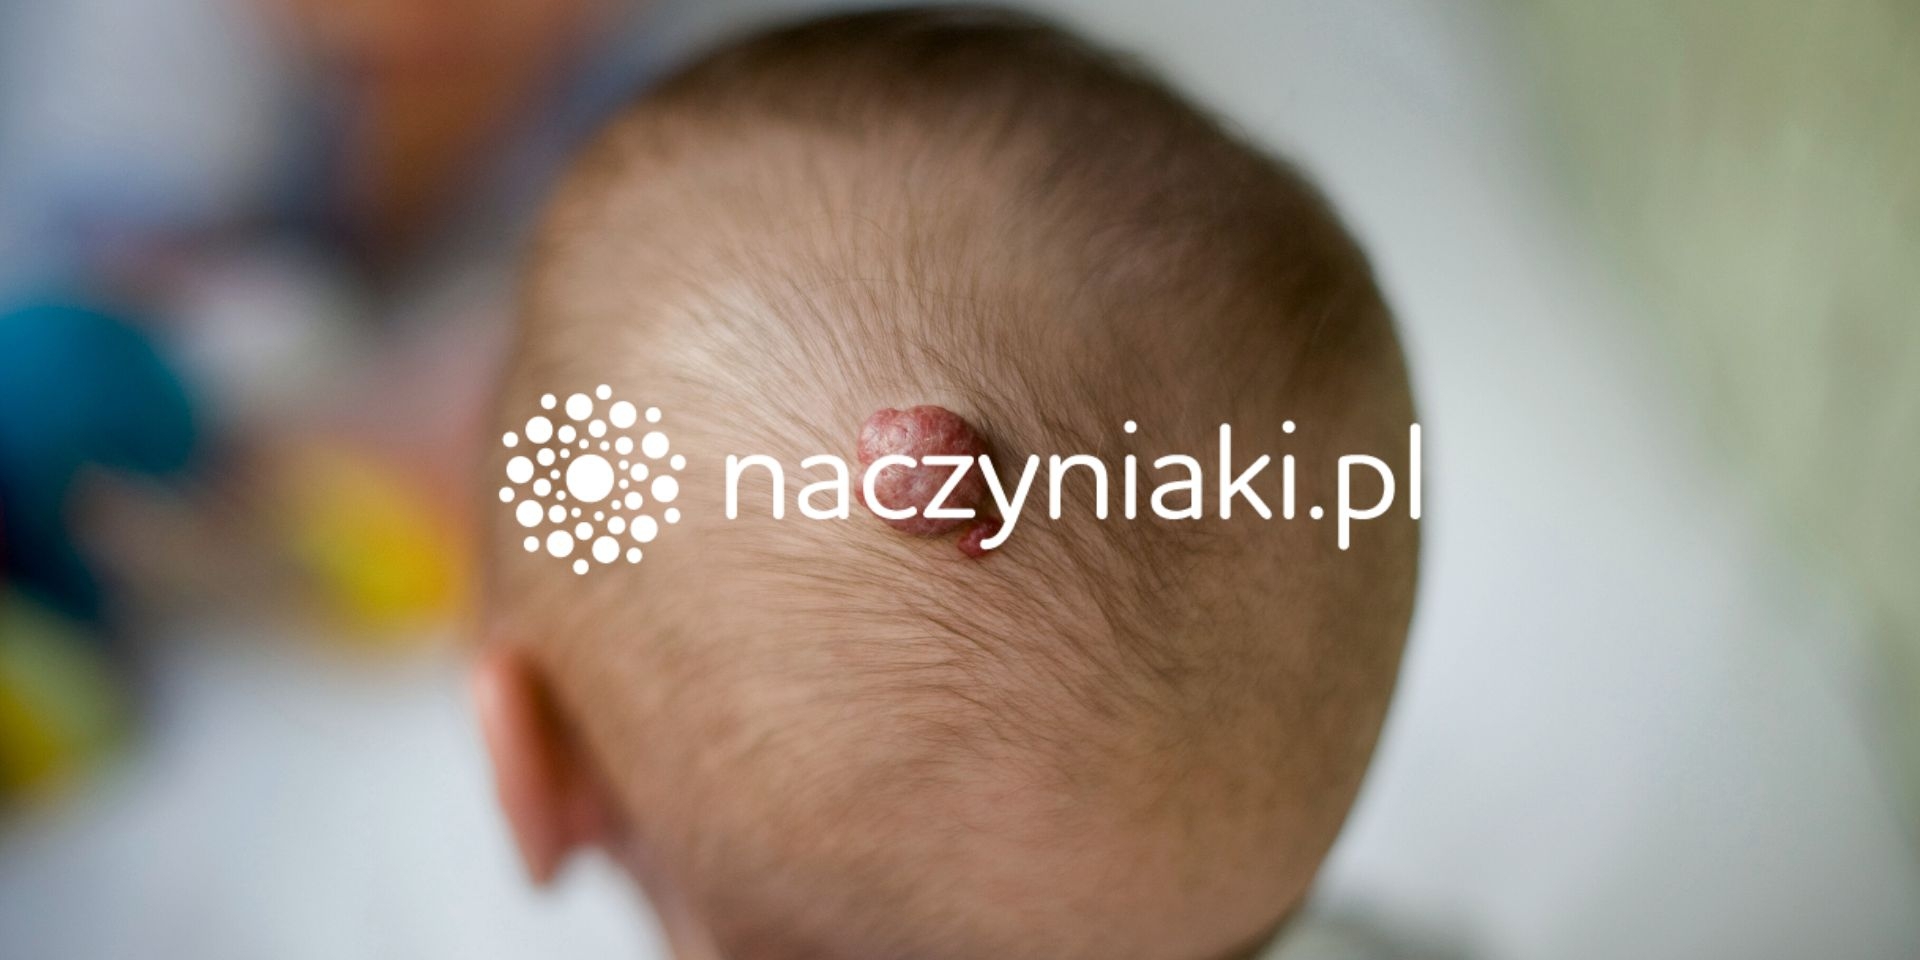 TG Coders - Pronect - Założyciel Naczyniaki.pl